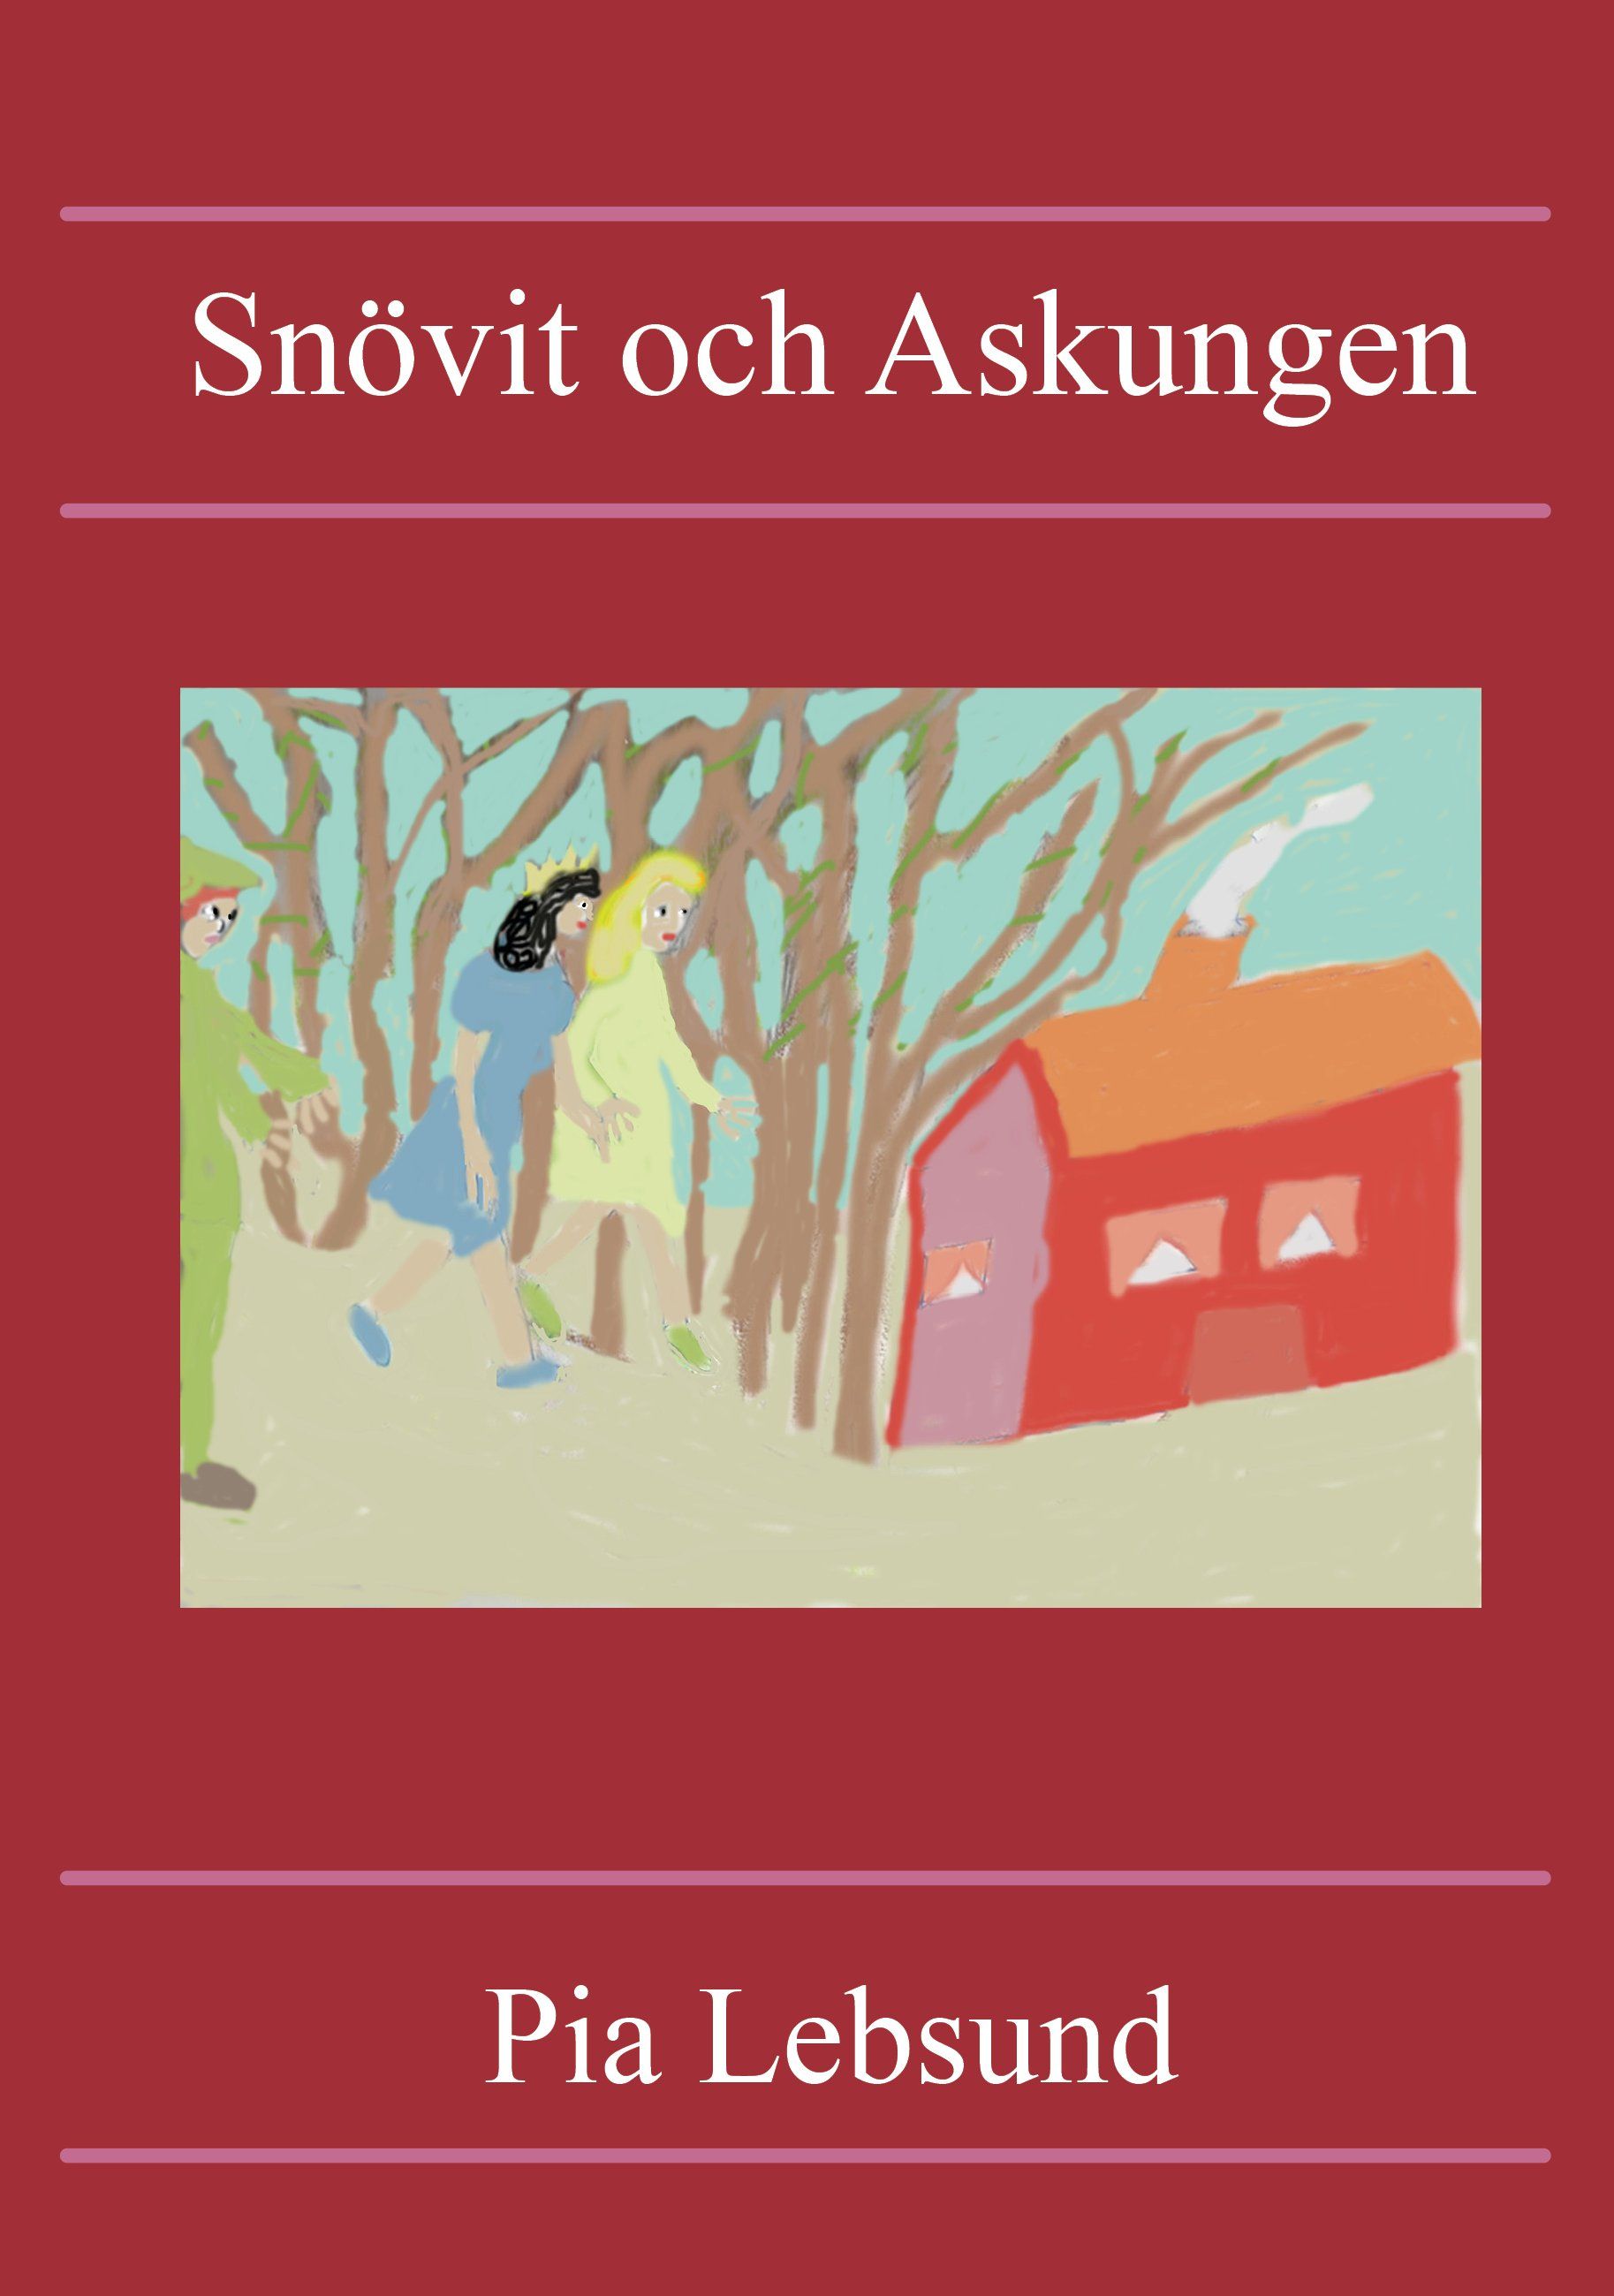 Snövit och Askungen, e-bog af Pia Lebsund